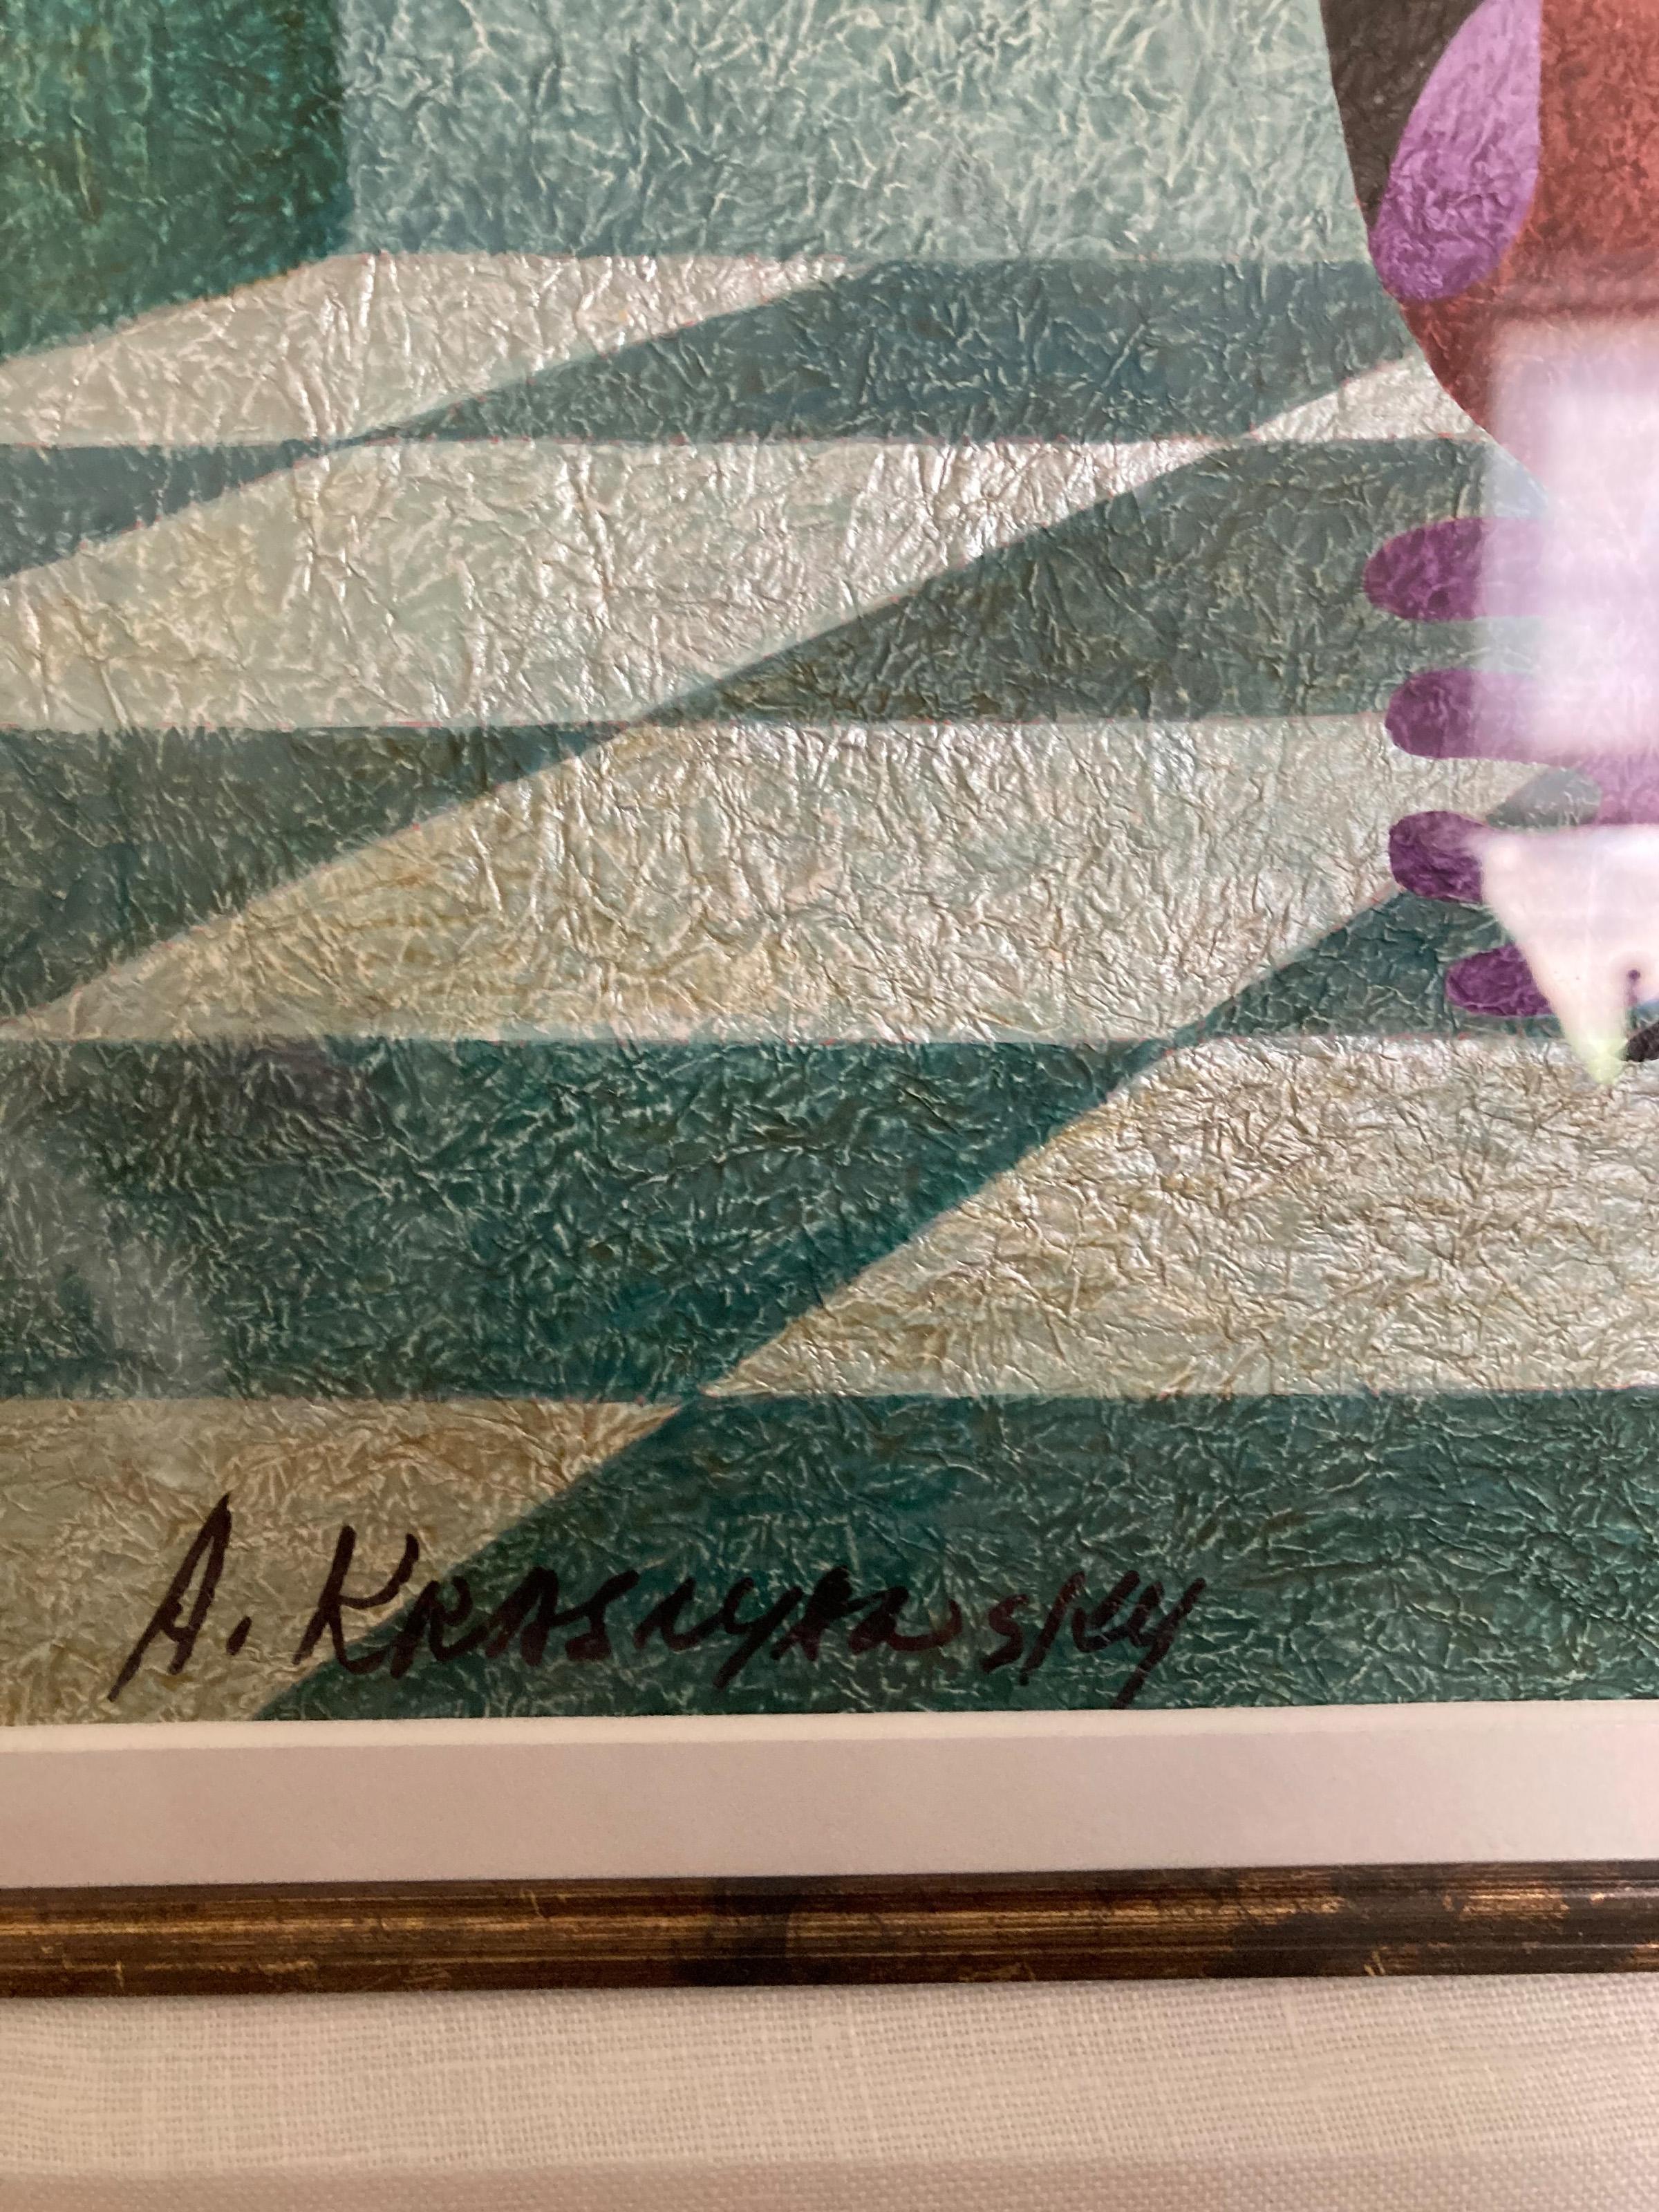  Anatole Krasnyansky, Ukrainien/Américain (1930 - ) - Arrivée royale, Année : 2008, Médium : Aquarelle et acrylique sur papier japonais fait main, signé en bas à gauche, Dimensions : 27.25 x 20.25 in. (69.22 x 51.44 cm), Dimensions du cadre : 42 x